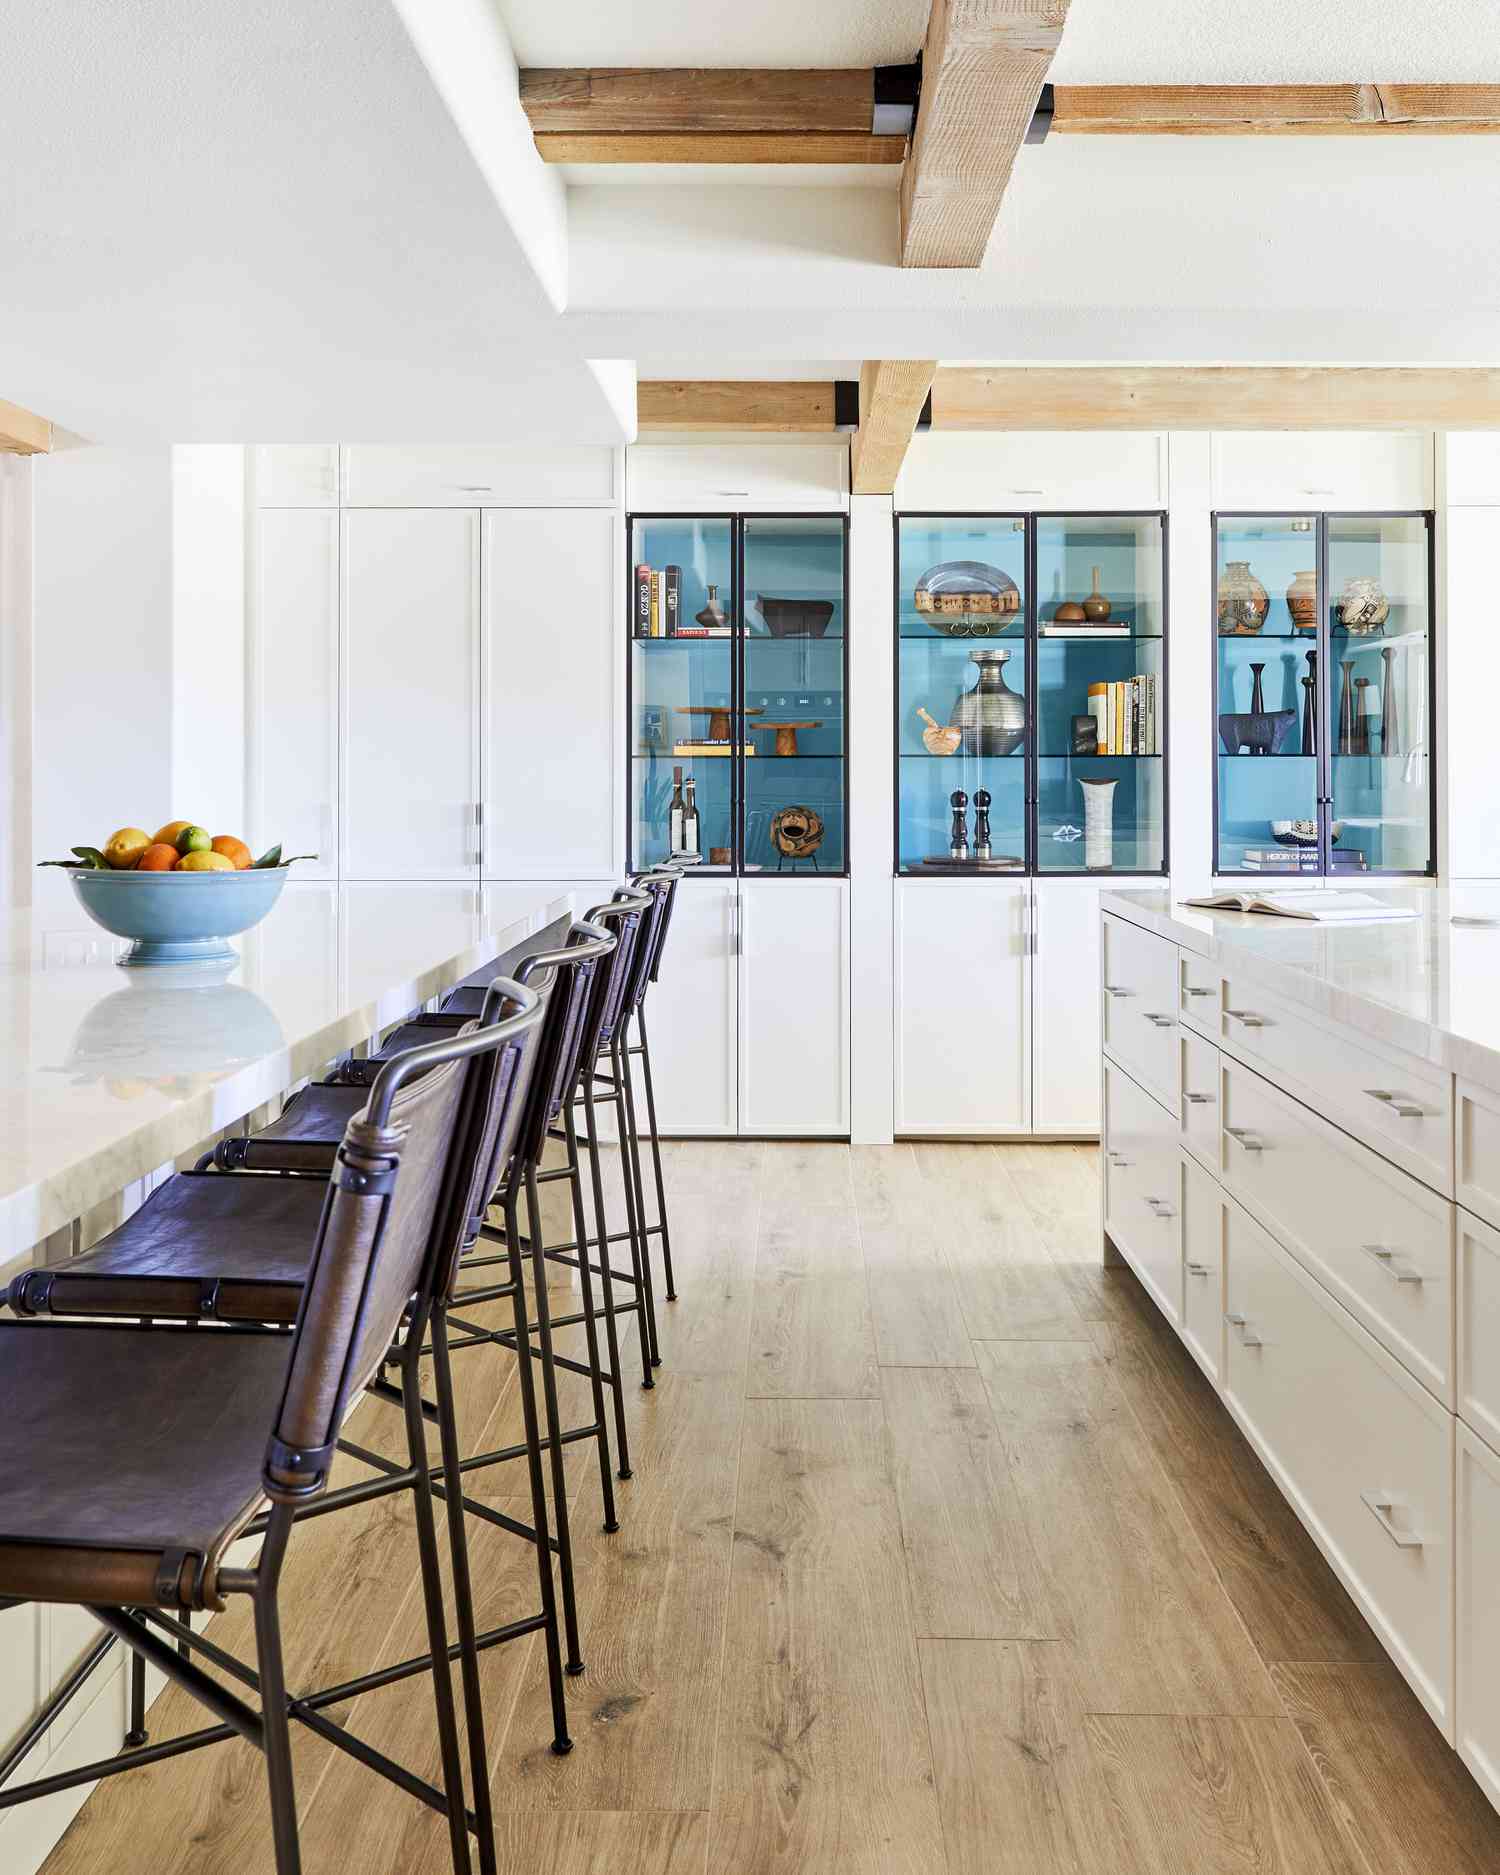 las paredes blancas de esta cocina ayudan a resaltar el azul de las estanterías